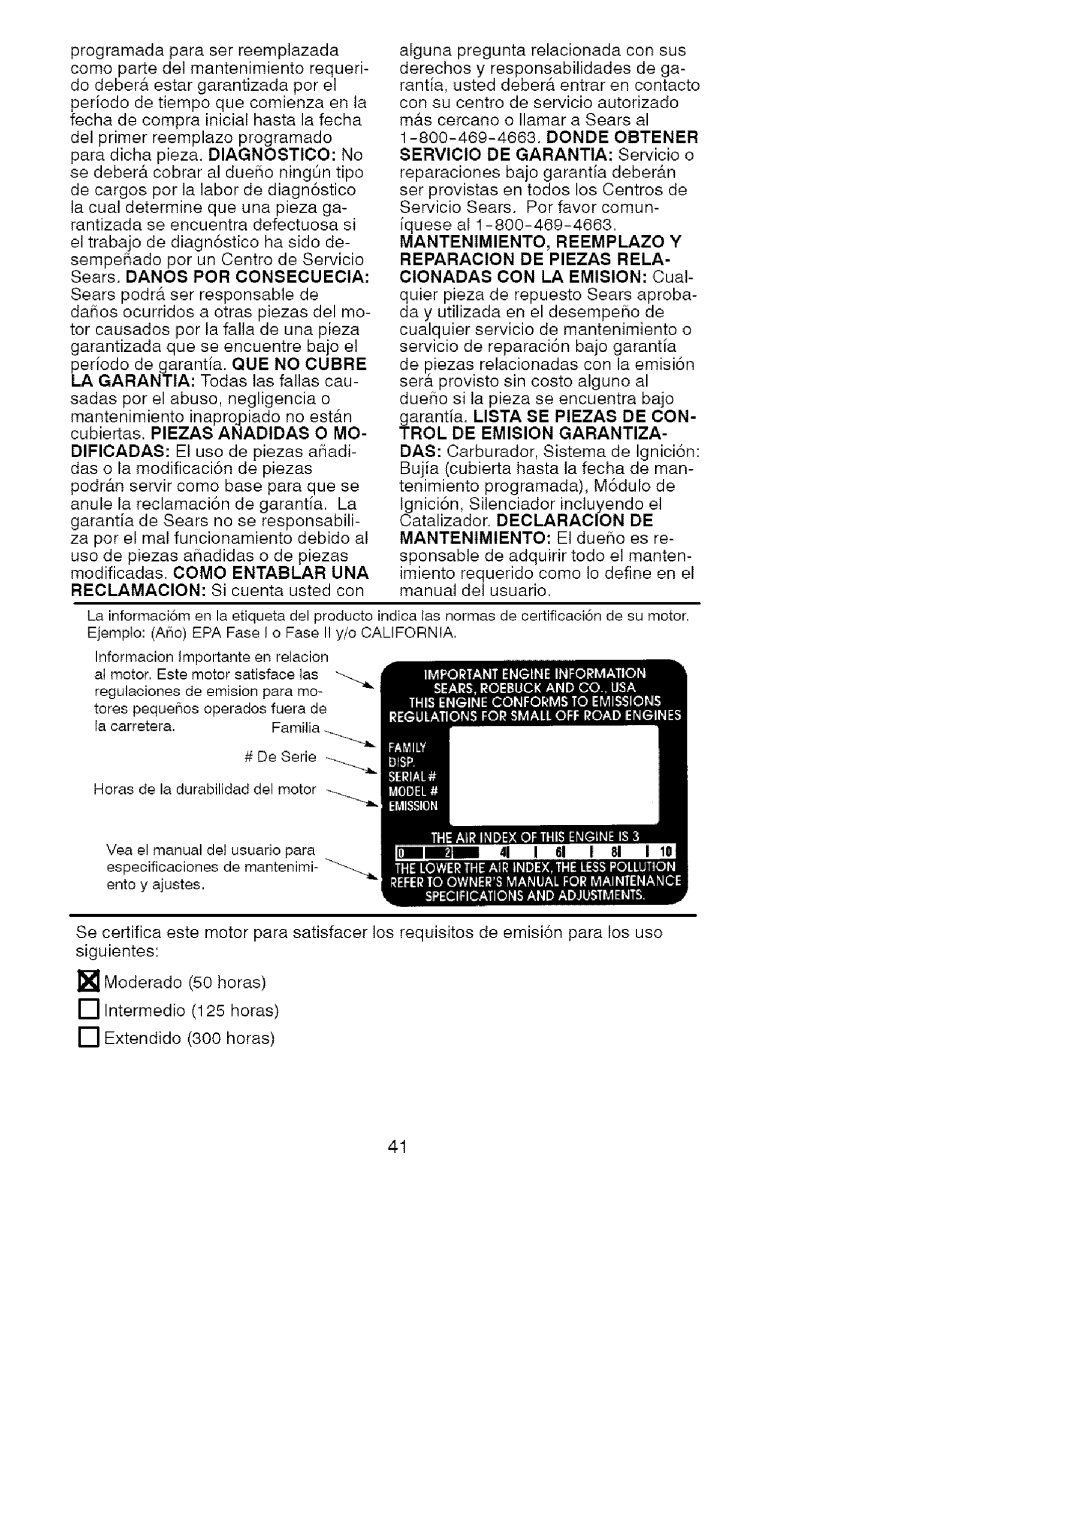 Craftsman 358.7958 RECLAMACION Sicuentaustedcon manual del usuario 